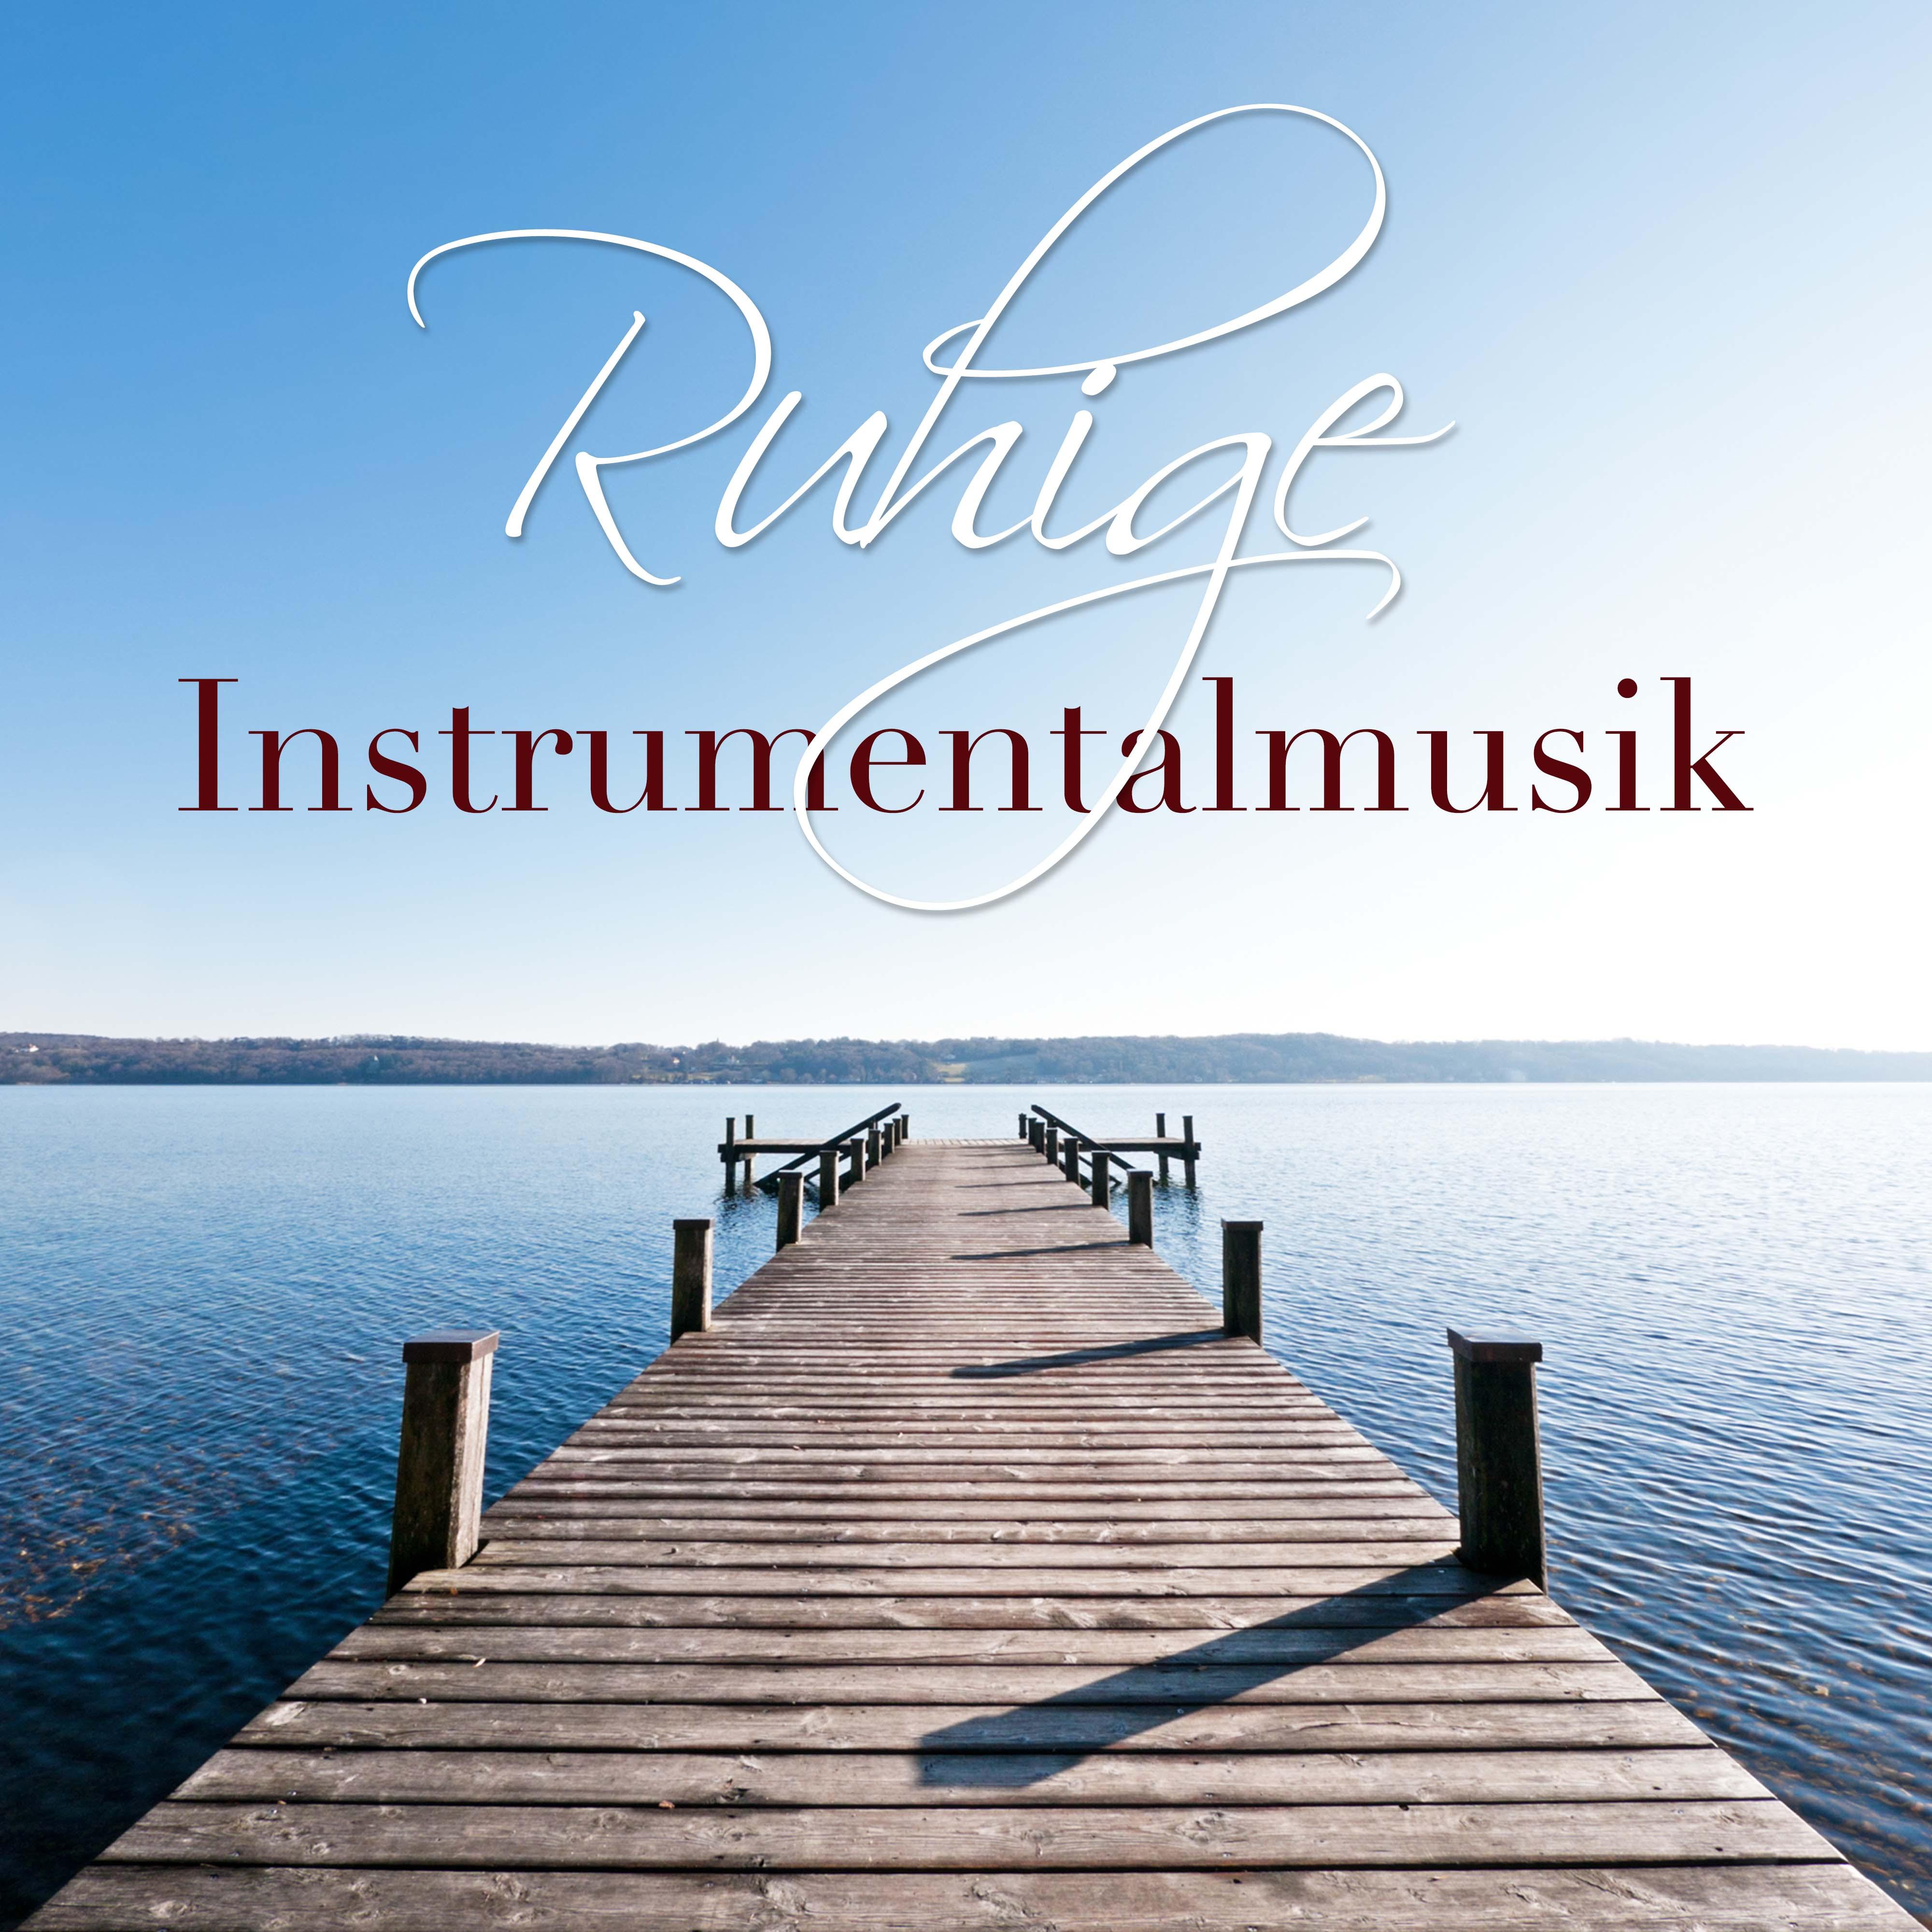 Ruhige Instrumentalmusik - Entspannungsübungen